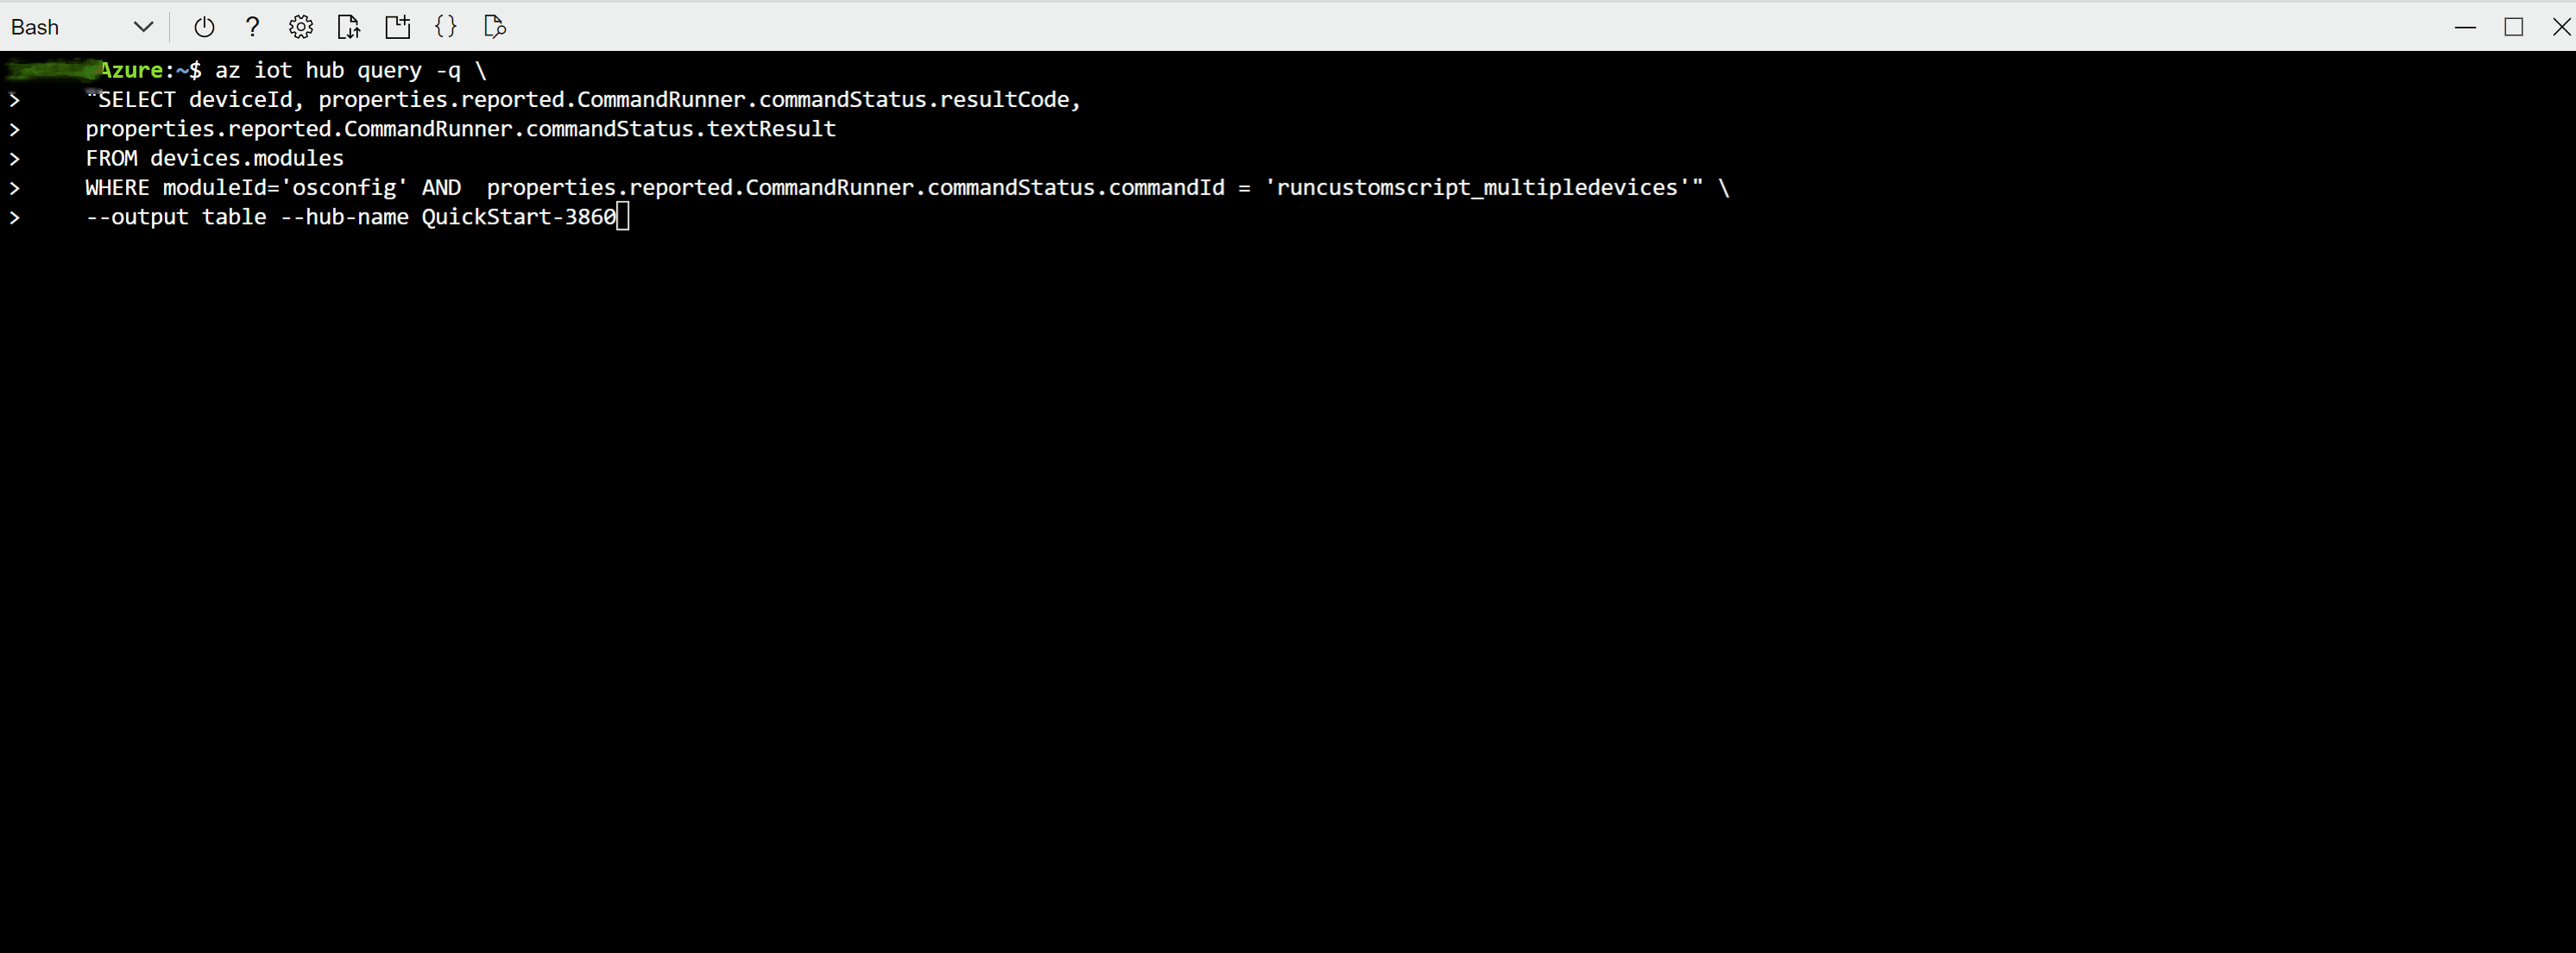 Captura de pantalla que muestra cómo comprobar después de ejecutar un script personalizado en una flota de dispositivos mediante Bash